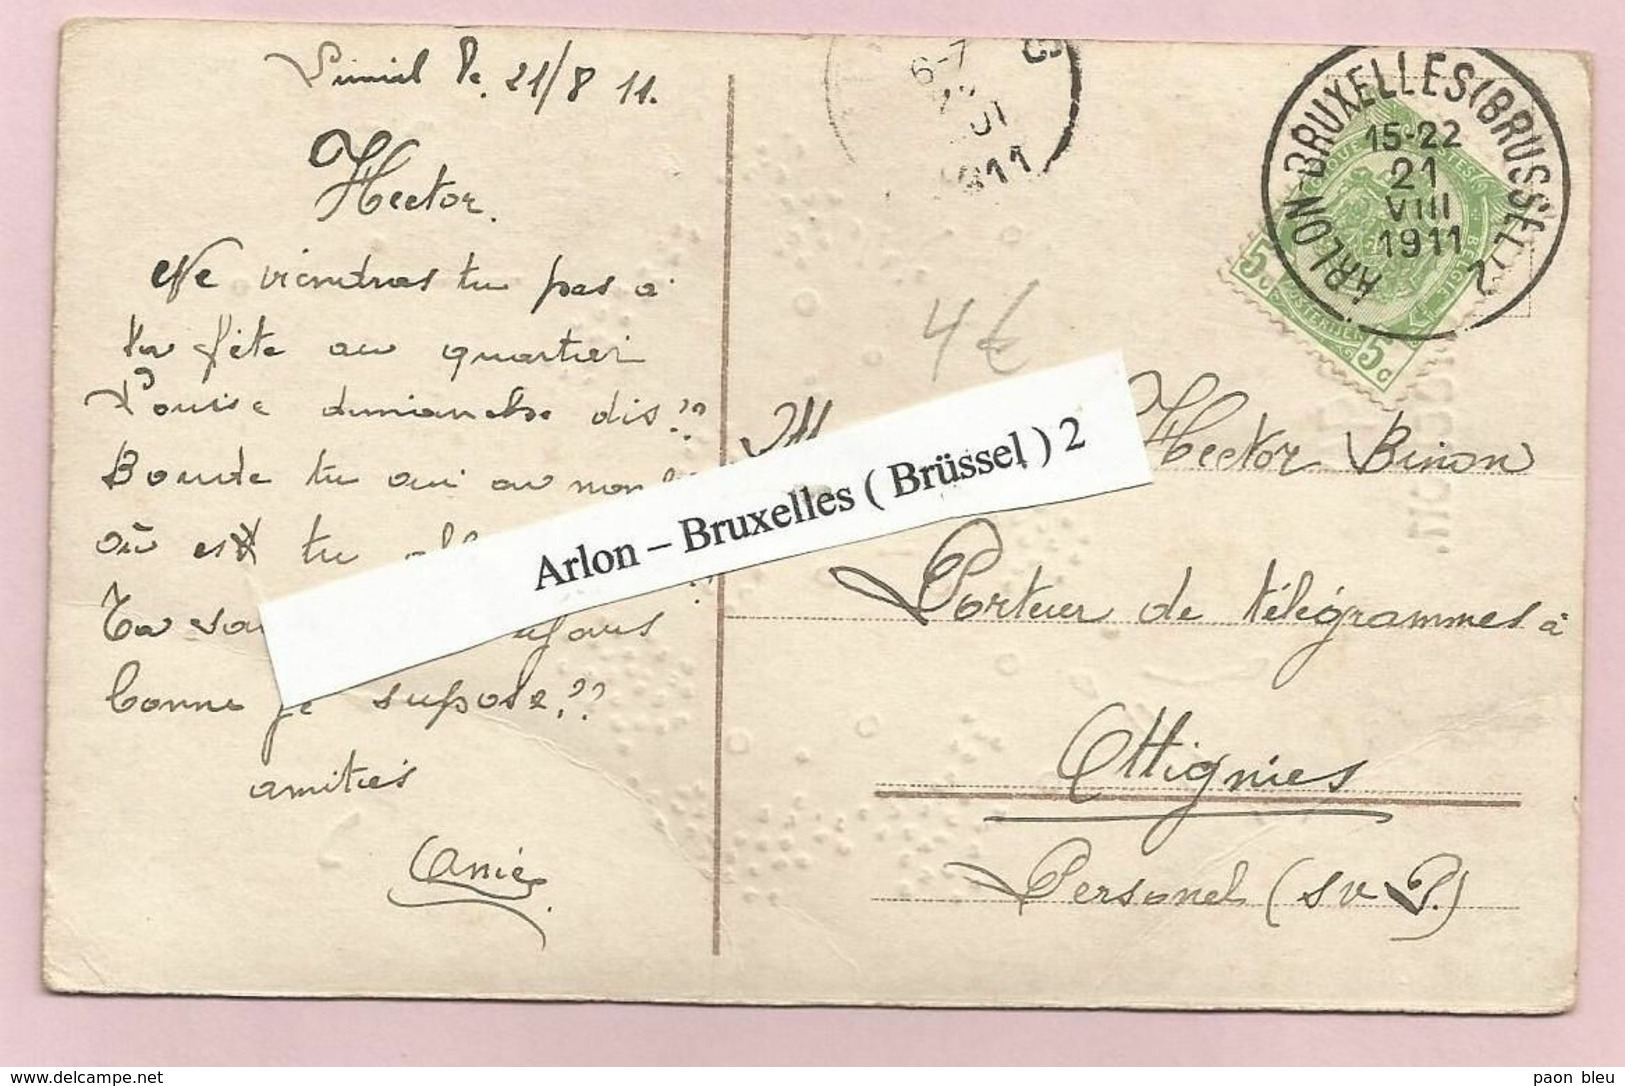 Belgique - Ambulants - Arlon-Bruxelles (Brussel)2 - Sur Carte Postale - Armoiries N°83 Du 21/8/1911 - Ambulants